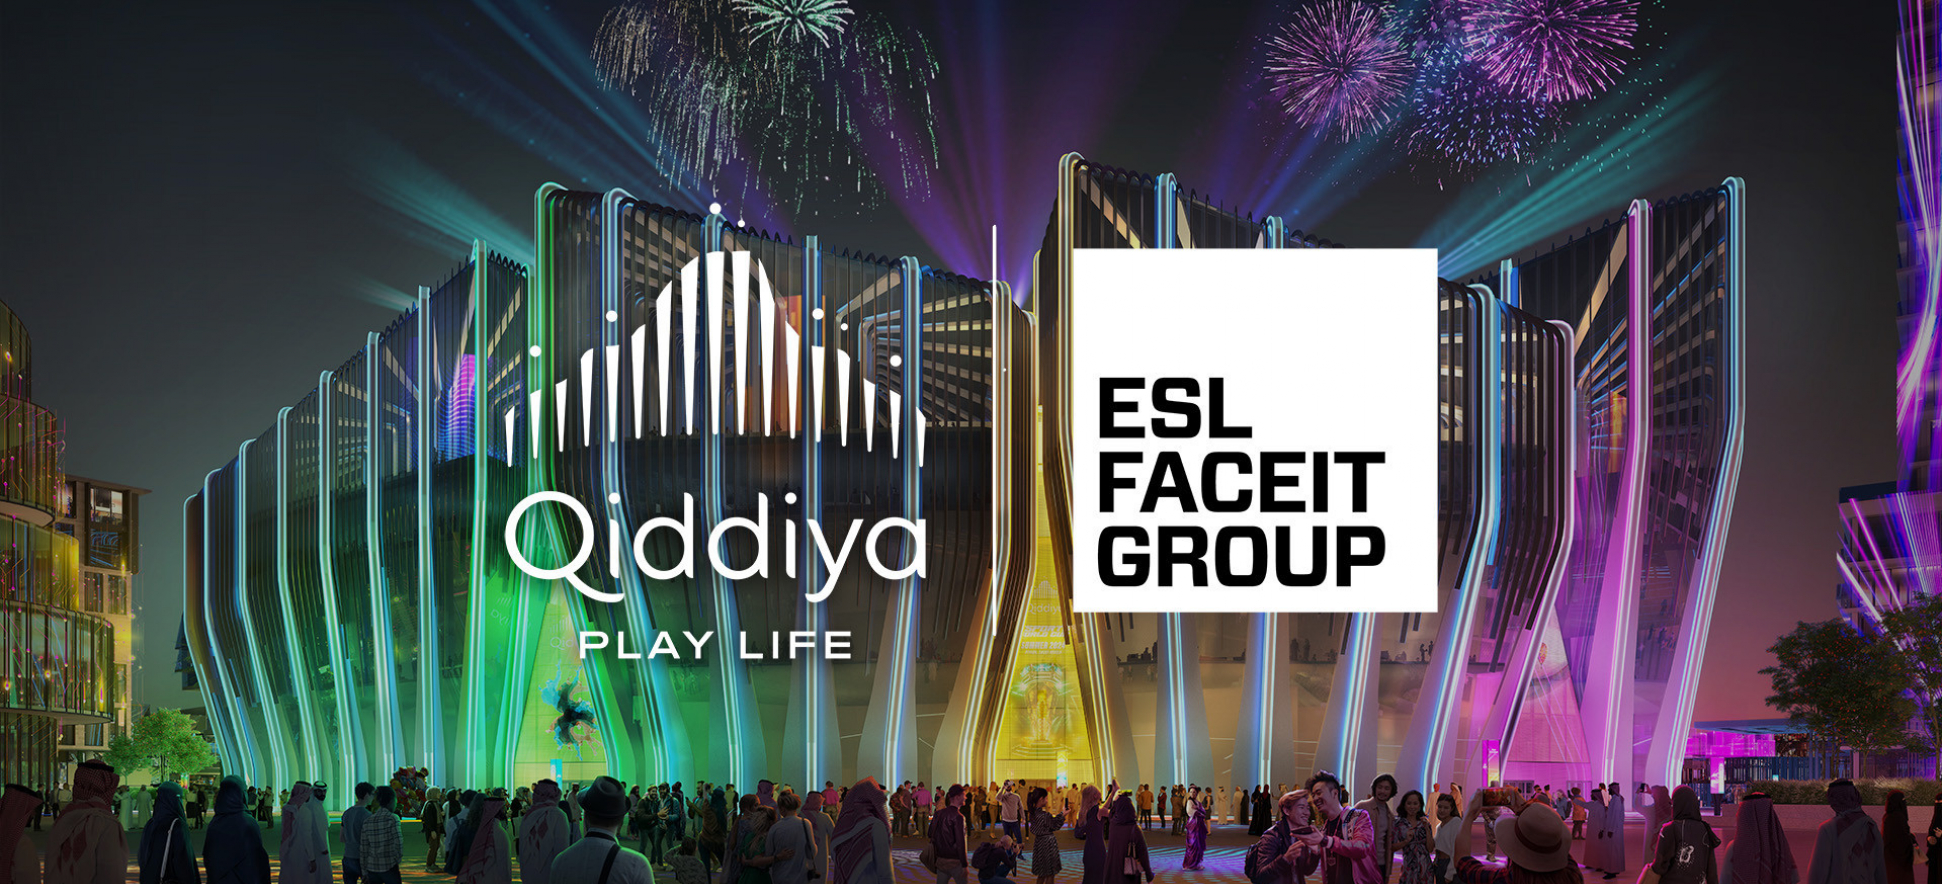 ESL и Qiddiya City: вместе создают центр киберспорта и развлечений!